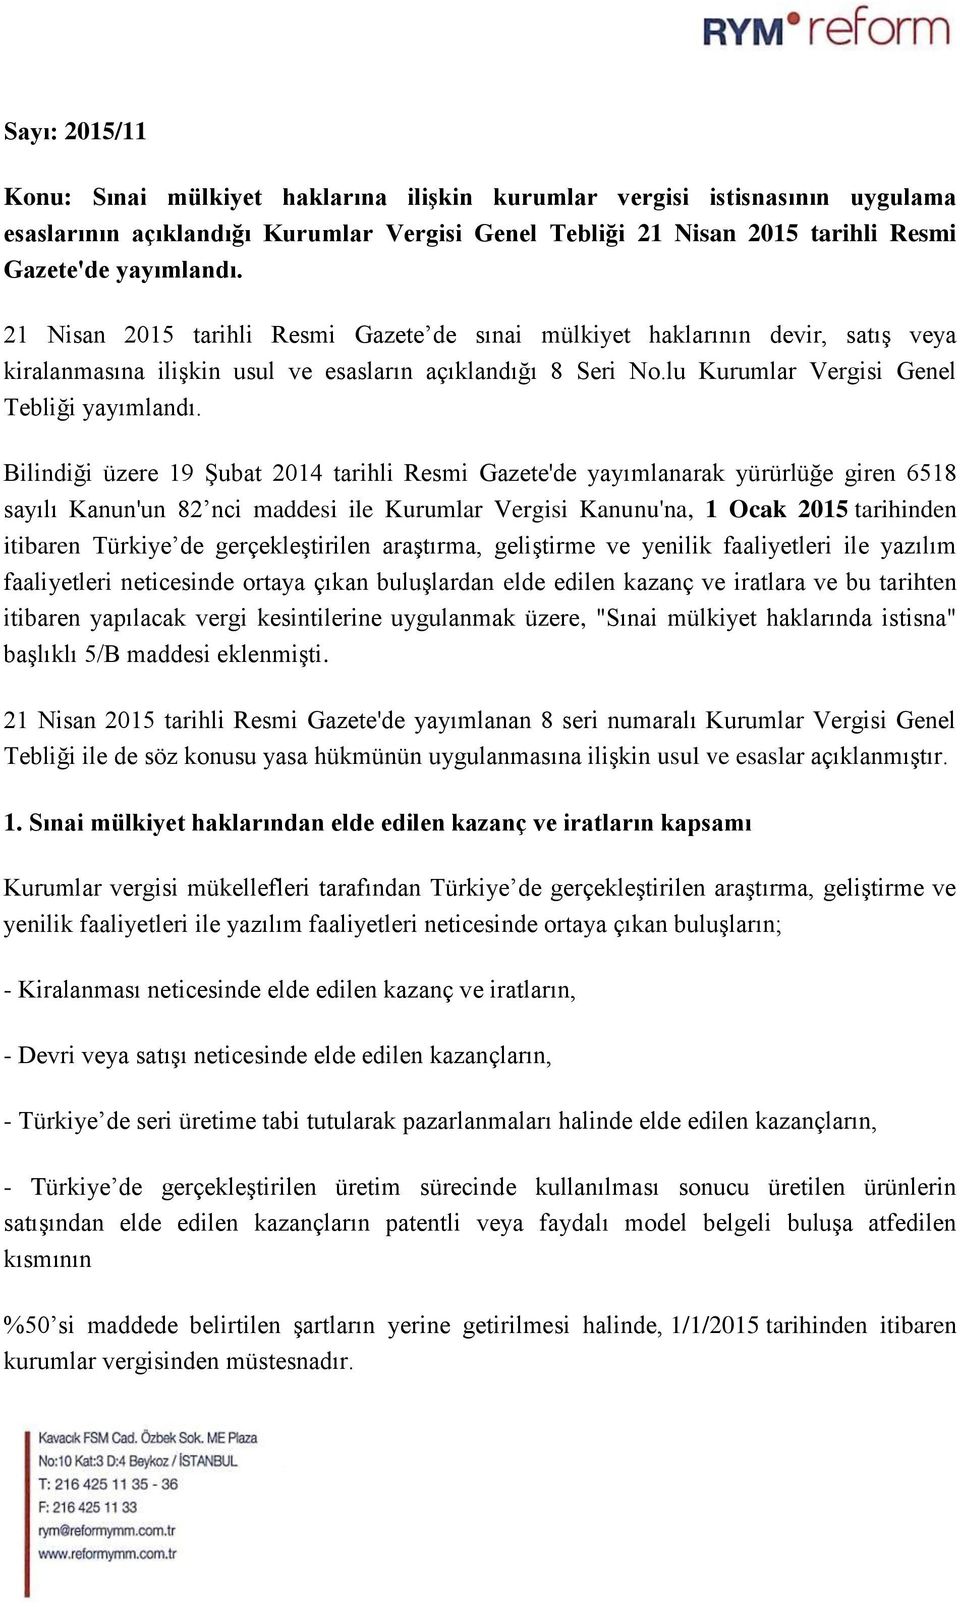 Bilindiği üzere 19 Şubat 2014 tarihli Resmi Gazete'de yayımlanarak yürürlüğe giren 6518 sayılı Kanun'un 82 nci maddesi ile Kurumlar Vergisi Kanunu'na, 1 Ocak 2015 tarihinden itibaren Türkiye de